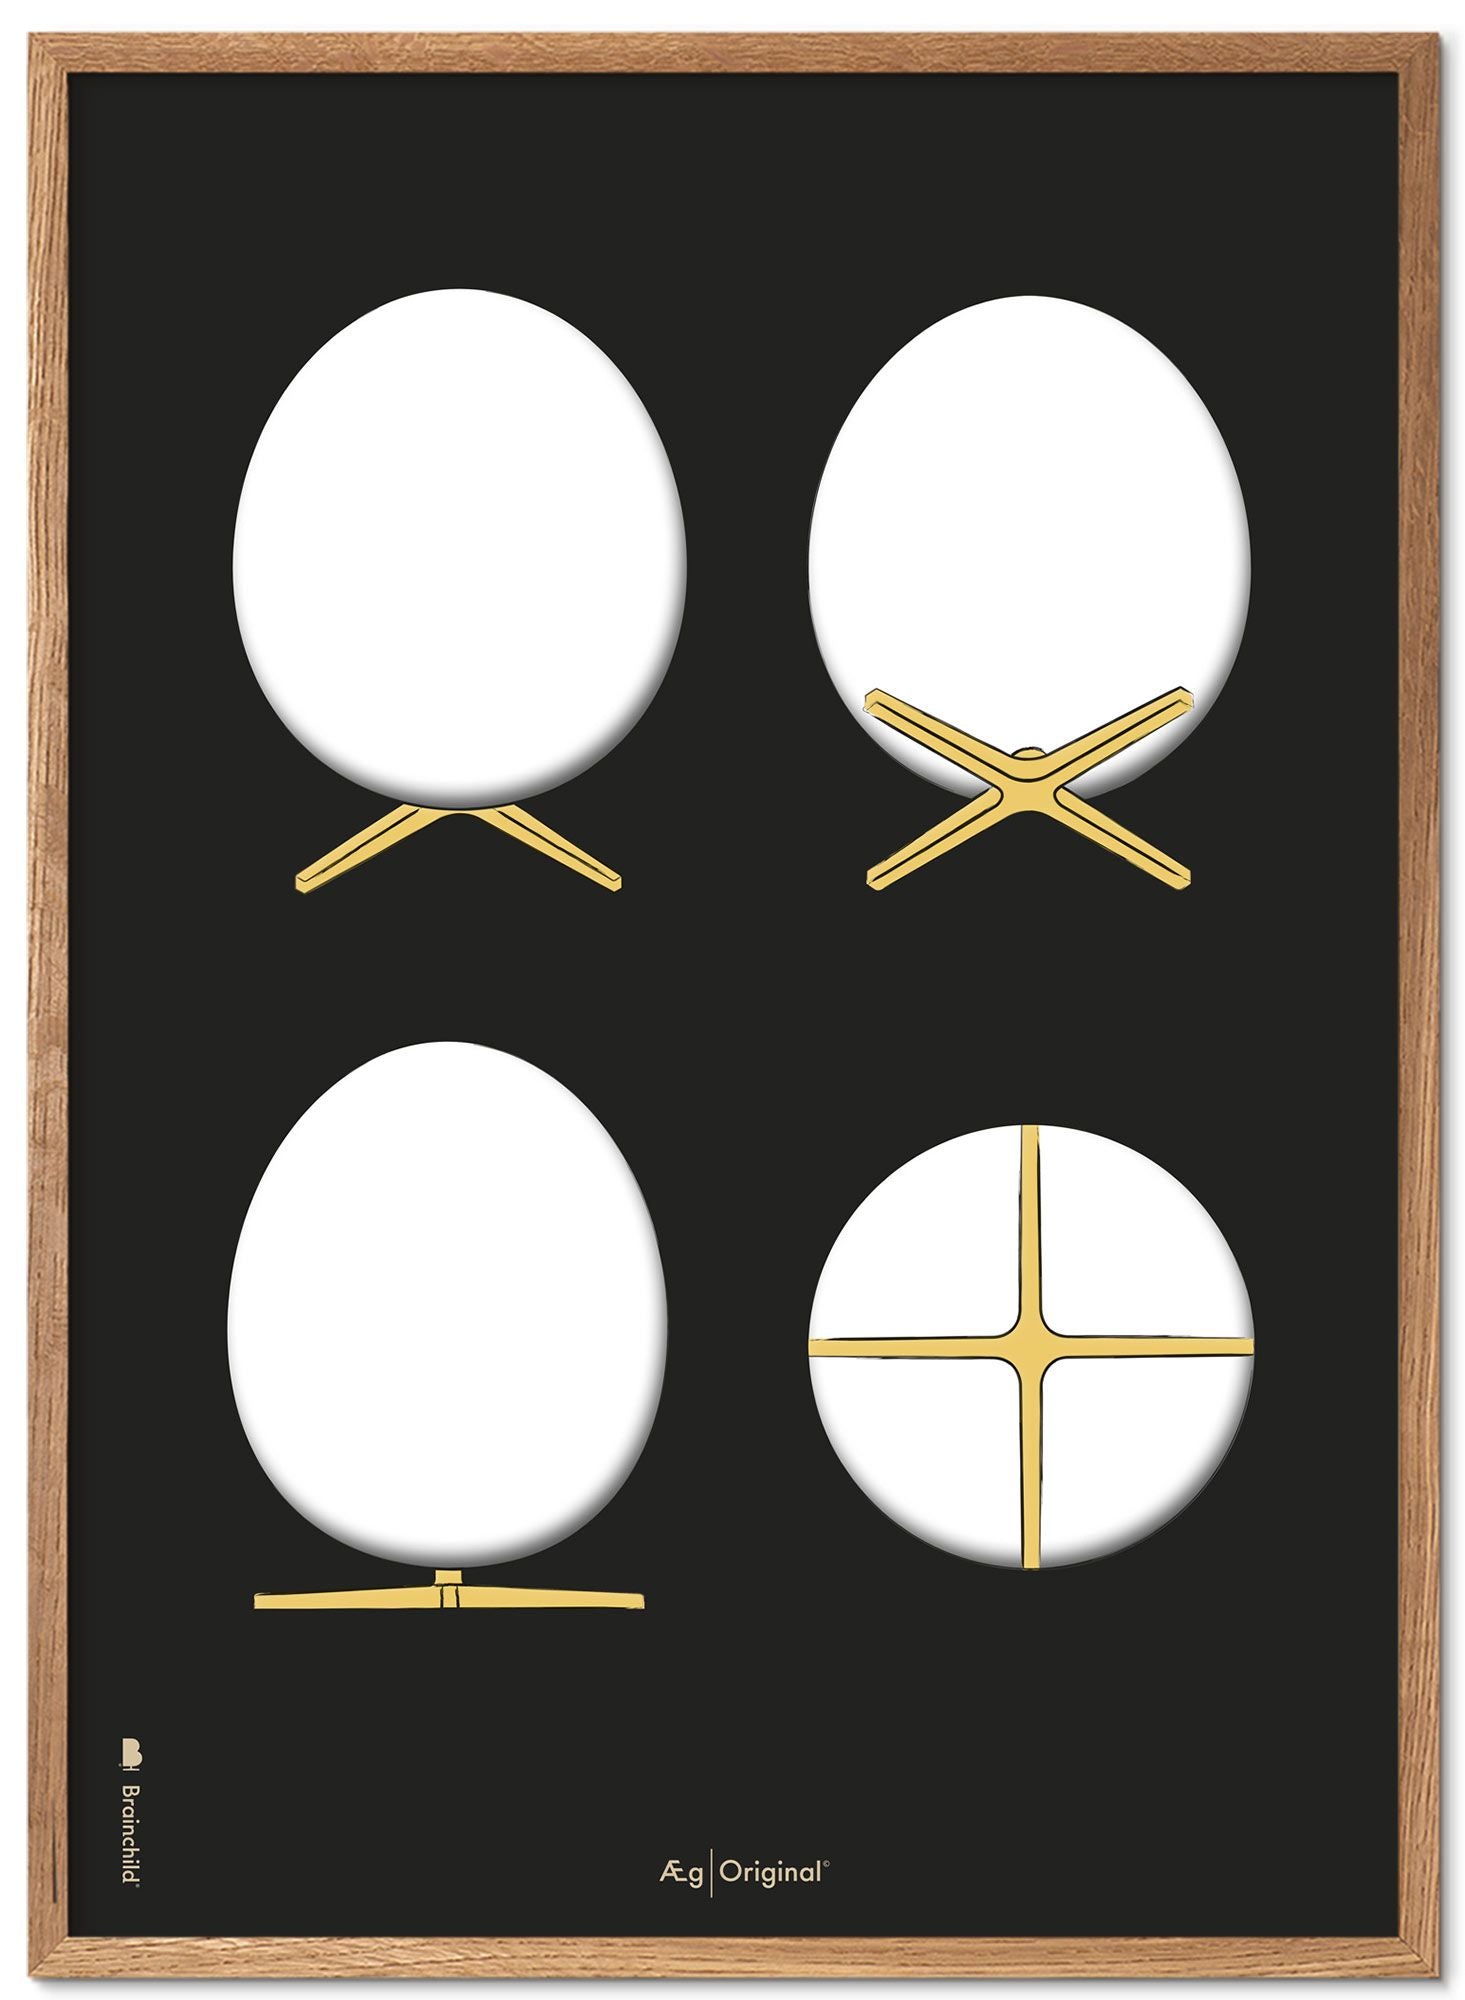 Brainchild The Egg Design Sketches Posterrahmen aus hellem Holz, 70 x 100 cm, schwarzer Hintergrund